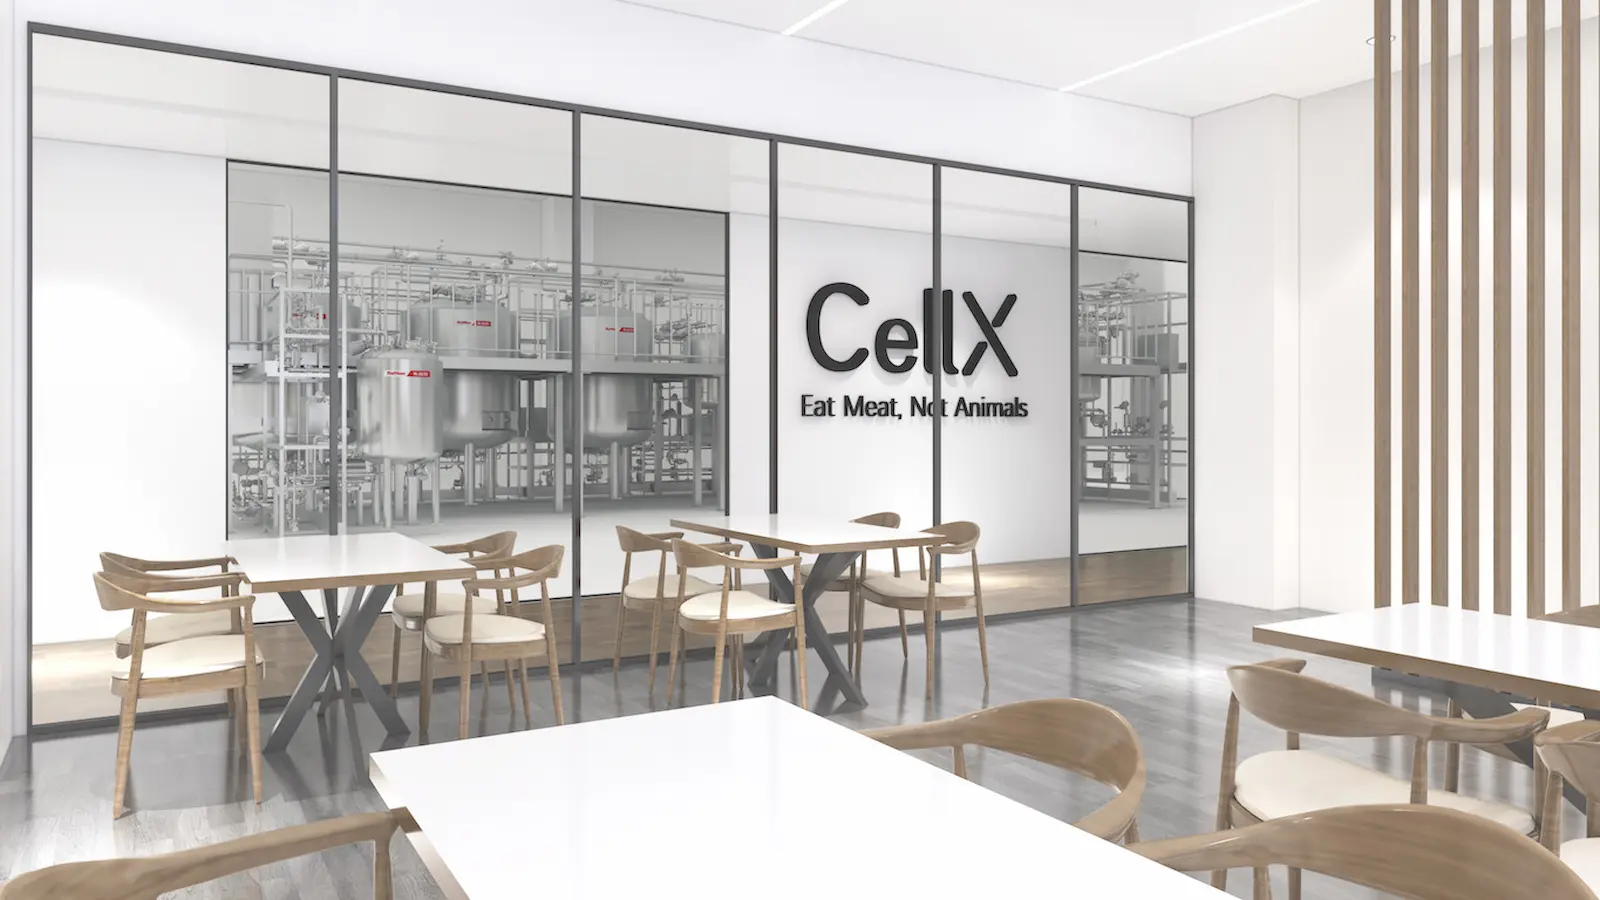 CellXの新工場イメージ